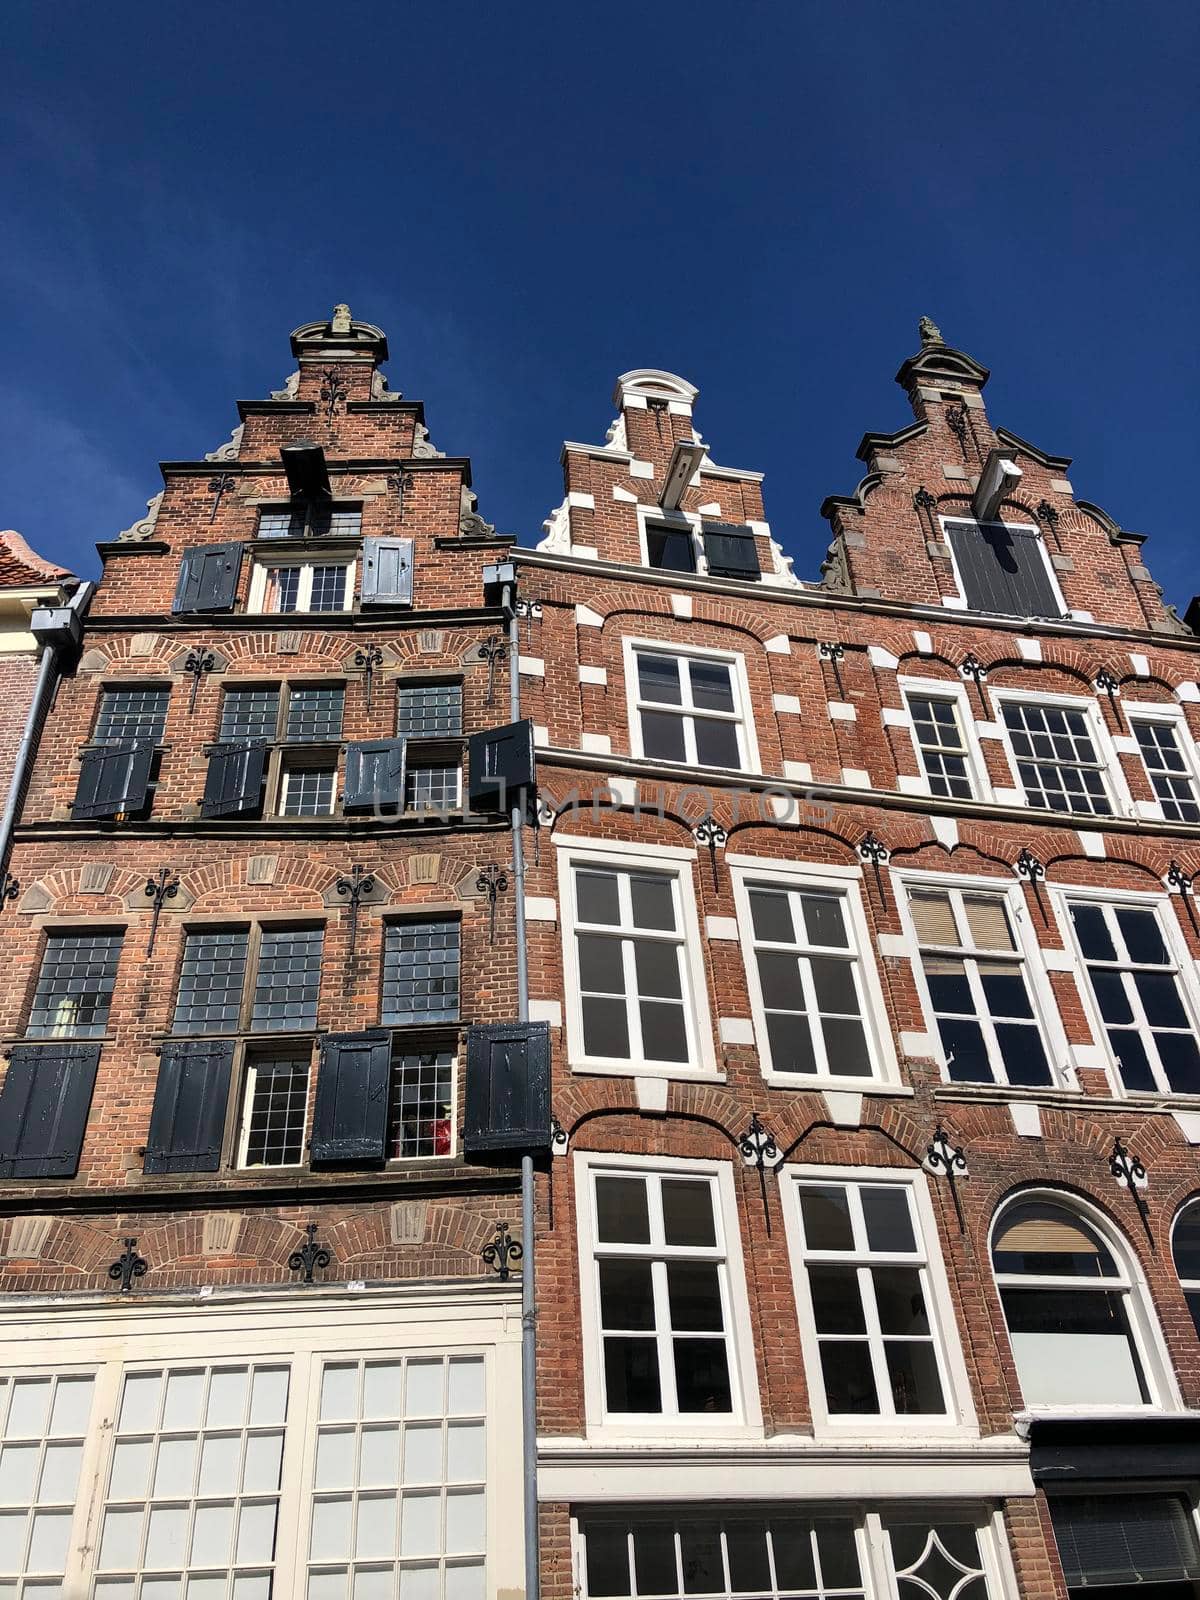 Architecture in the old town of Zutphen, Gelderland The Netherlands